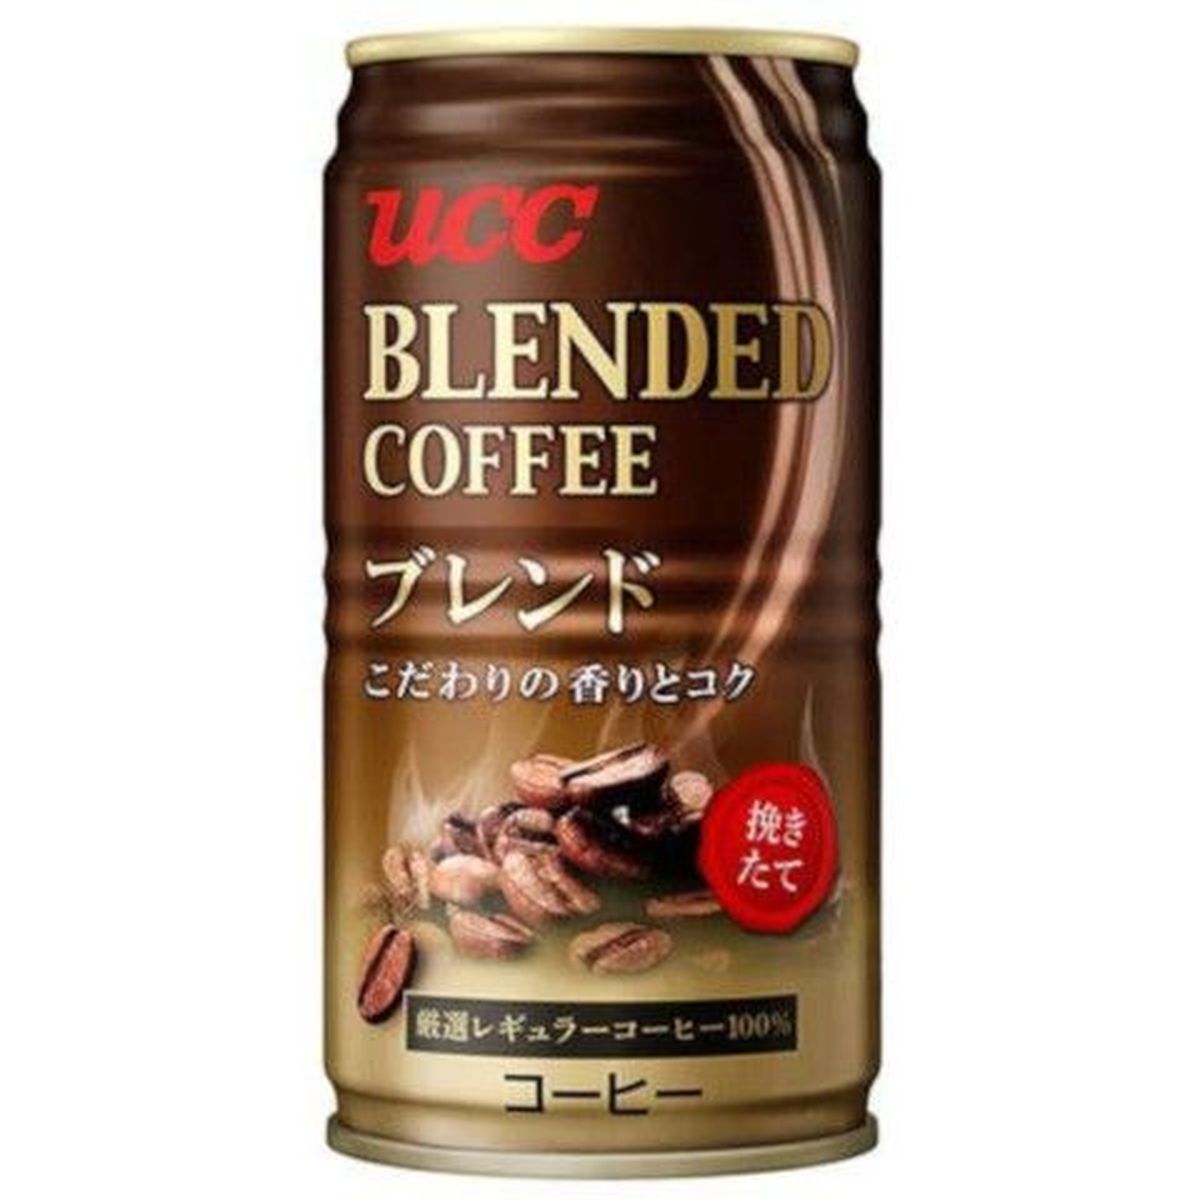 【30個入リ】UCC ブレンドコーヒー 缶 185g